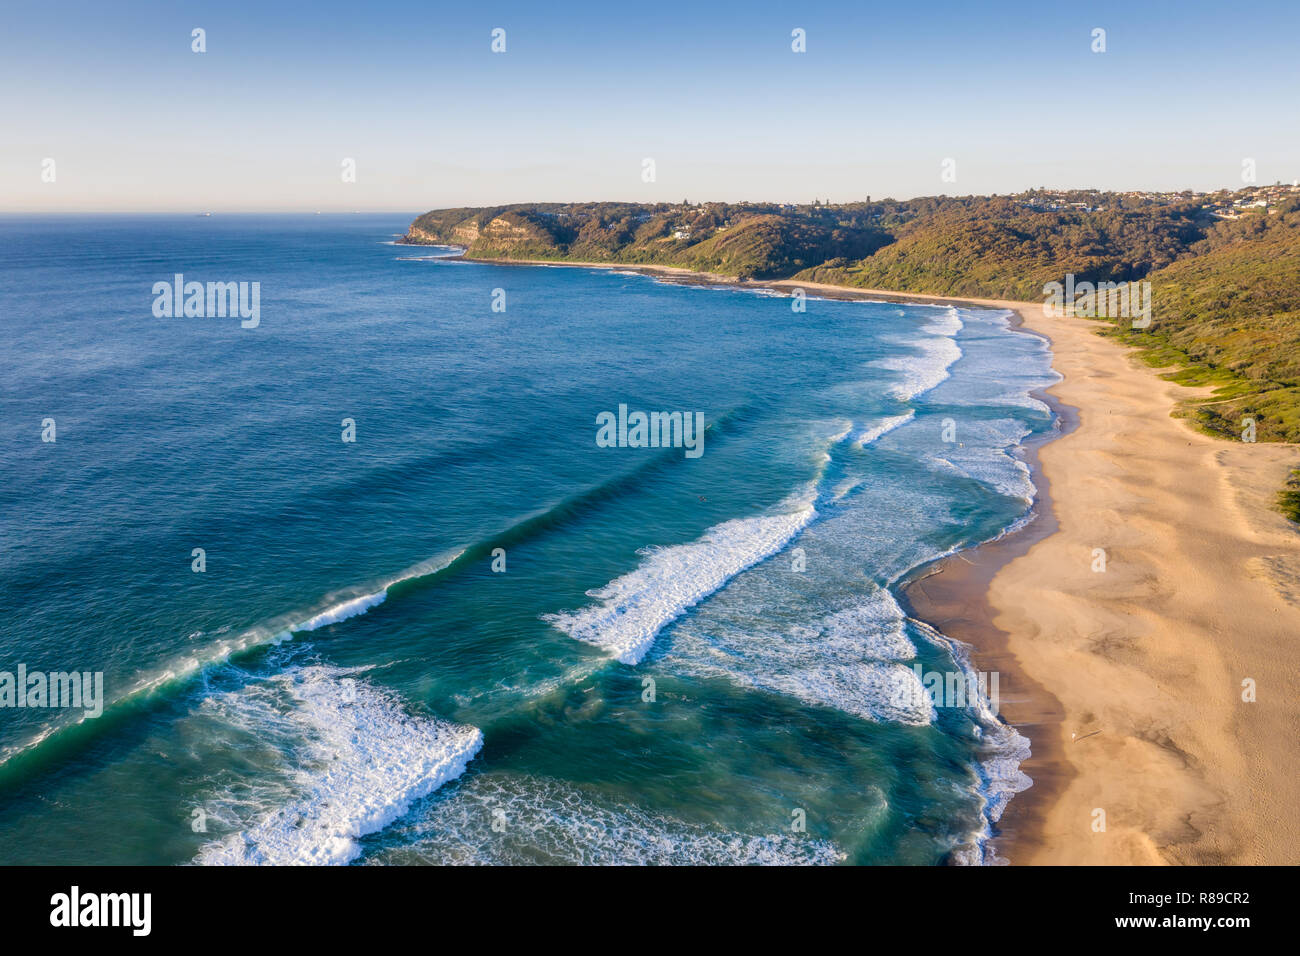 Luftaufnahme von Dudley Strand - Newcastle, Australien. Dieser Strand ist nur wenige Kilometer südlich der Innenstadt hat große surfen. Stockfoto